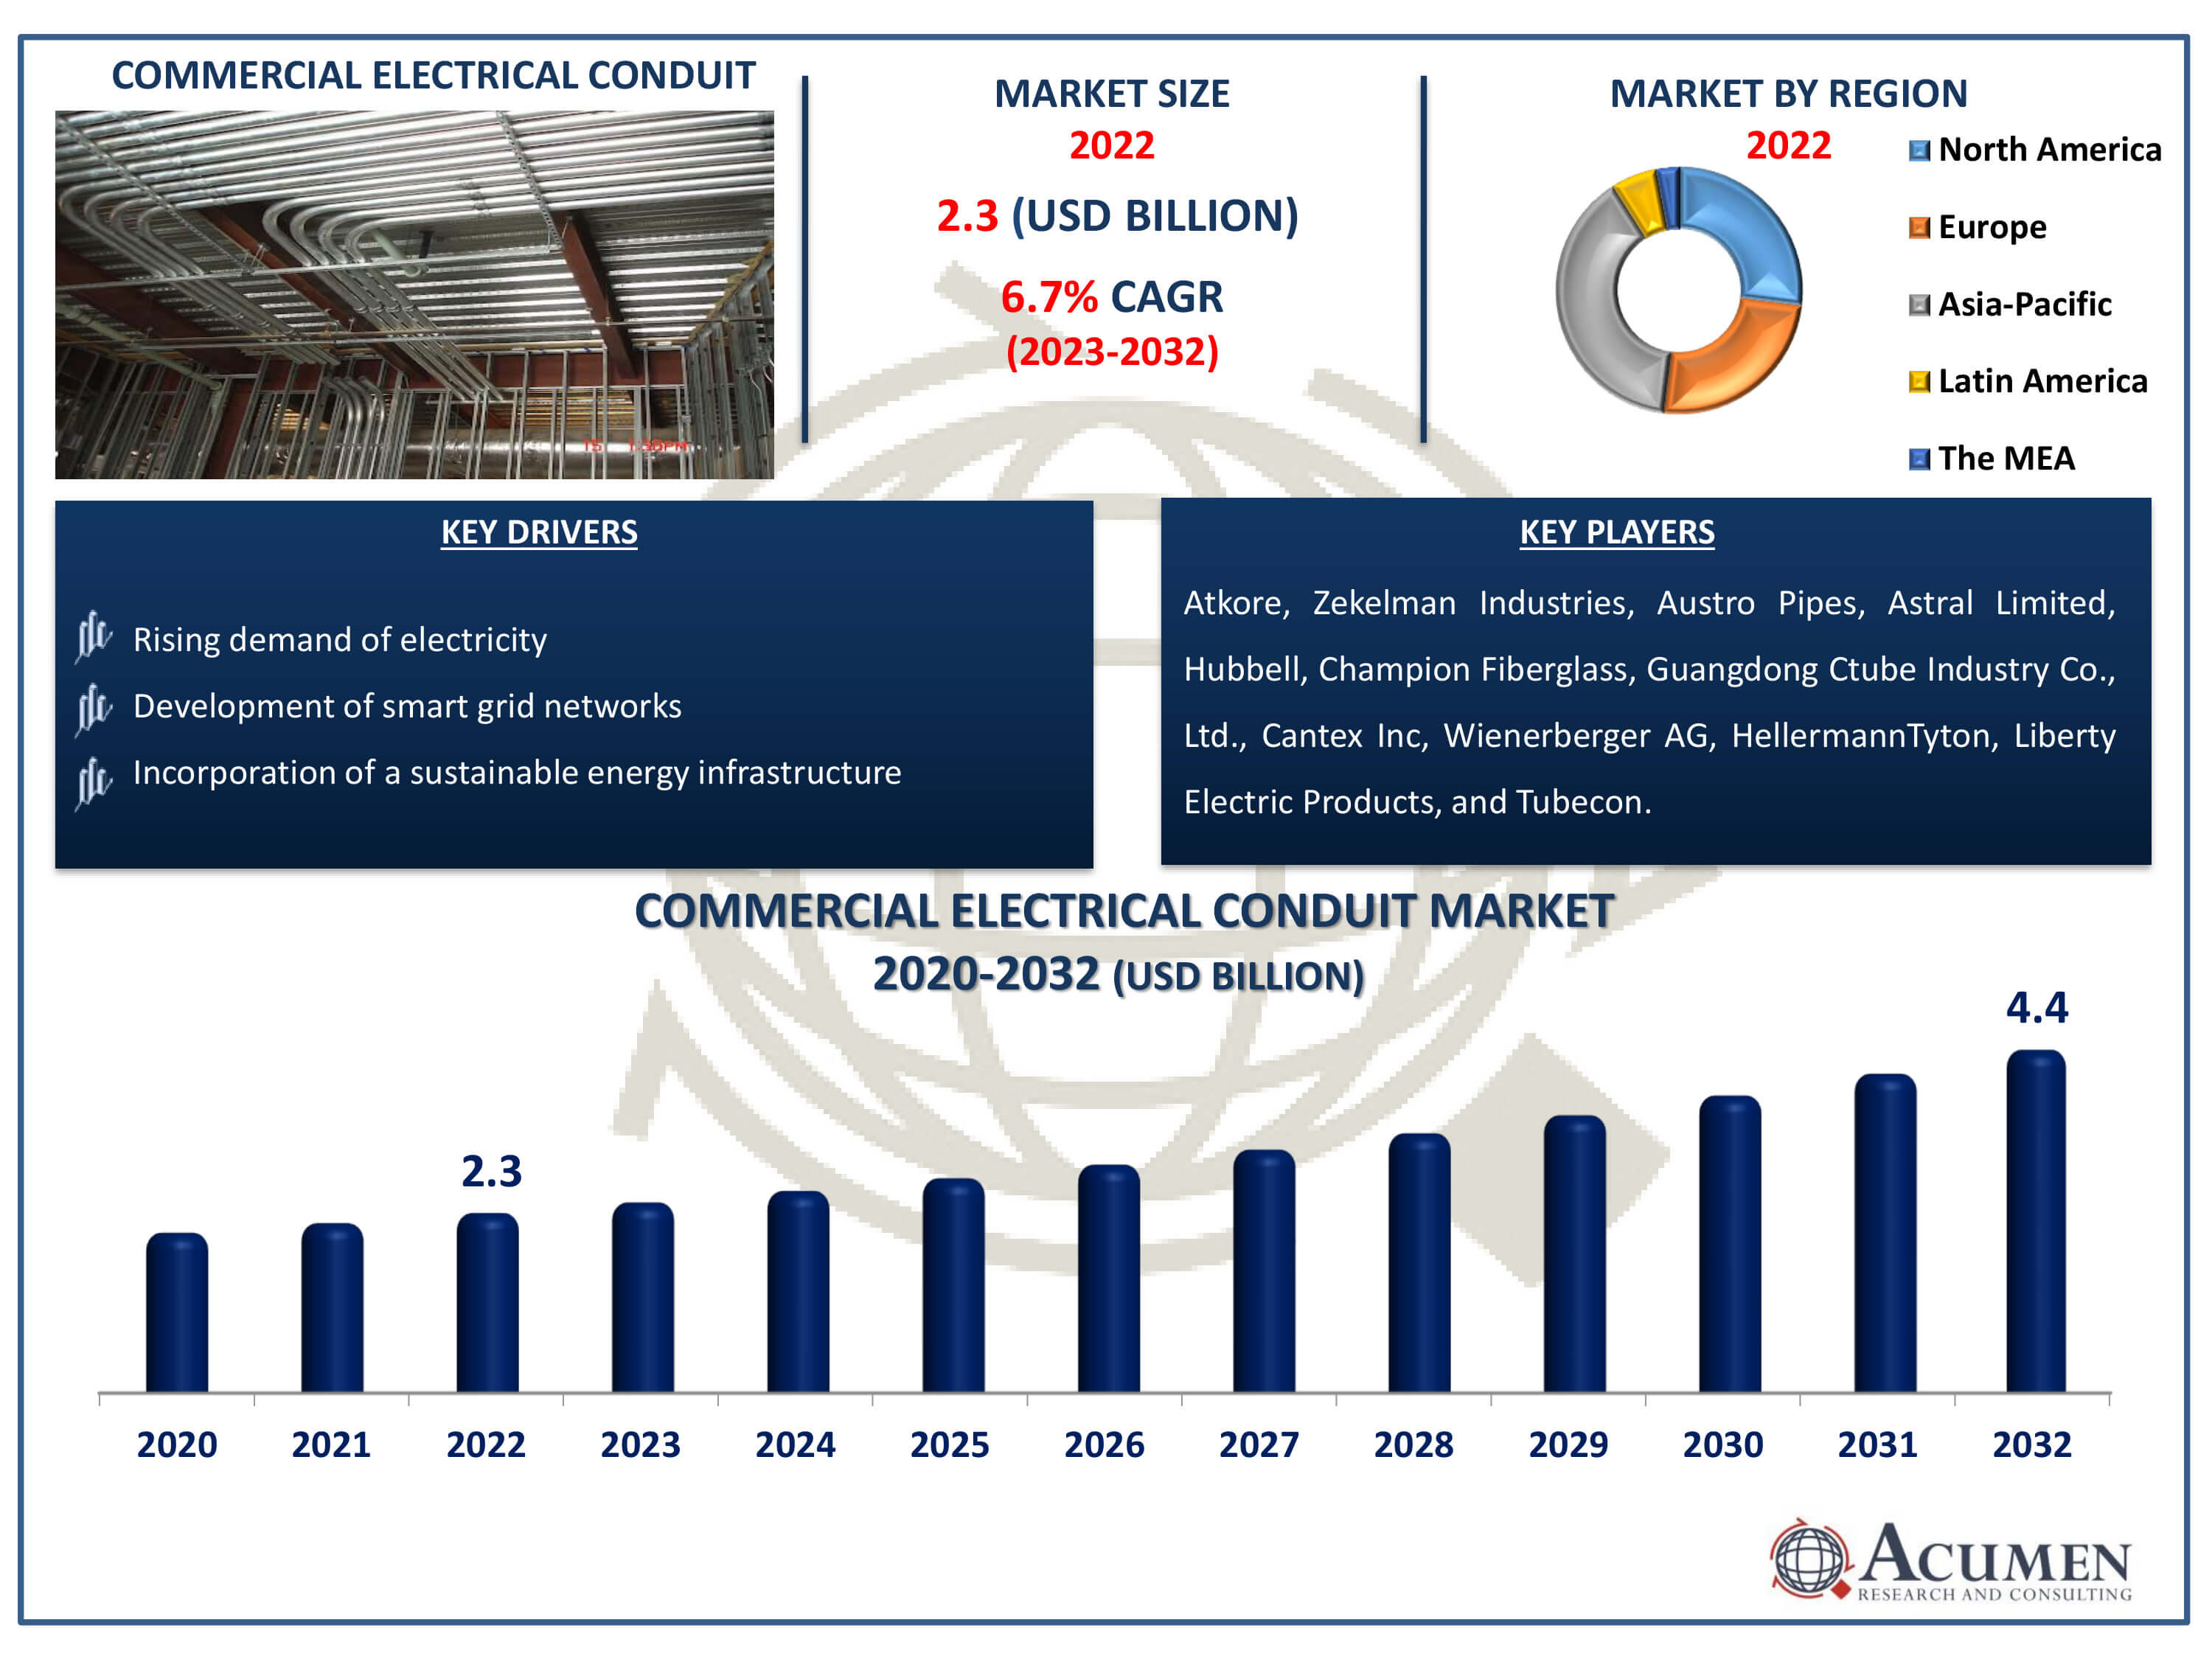 Commercial Electrical Conduit Market Dynamics